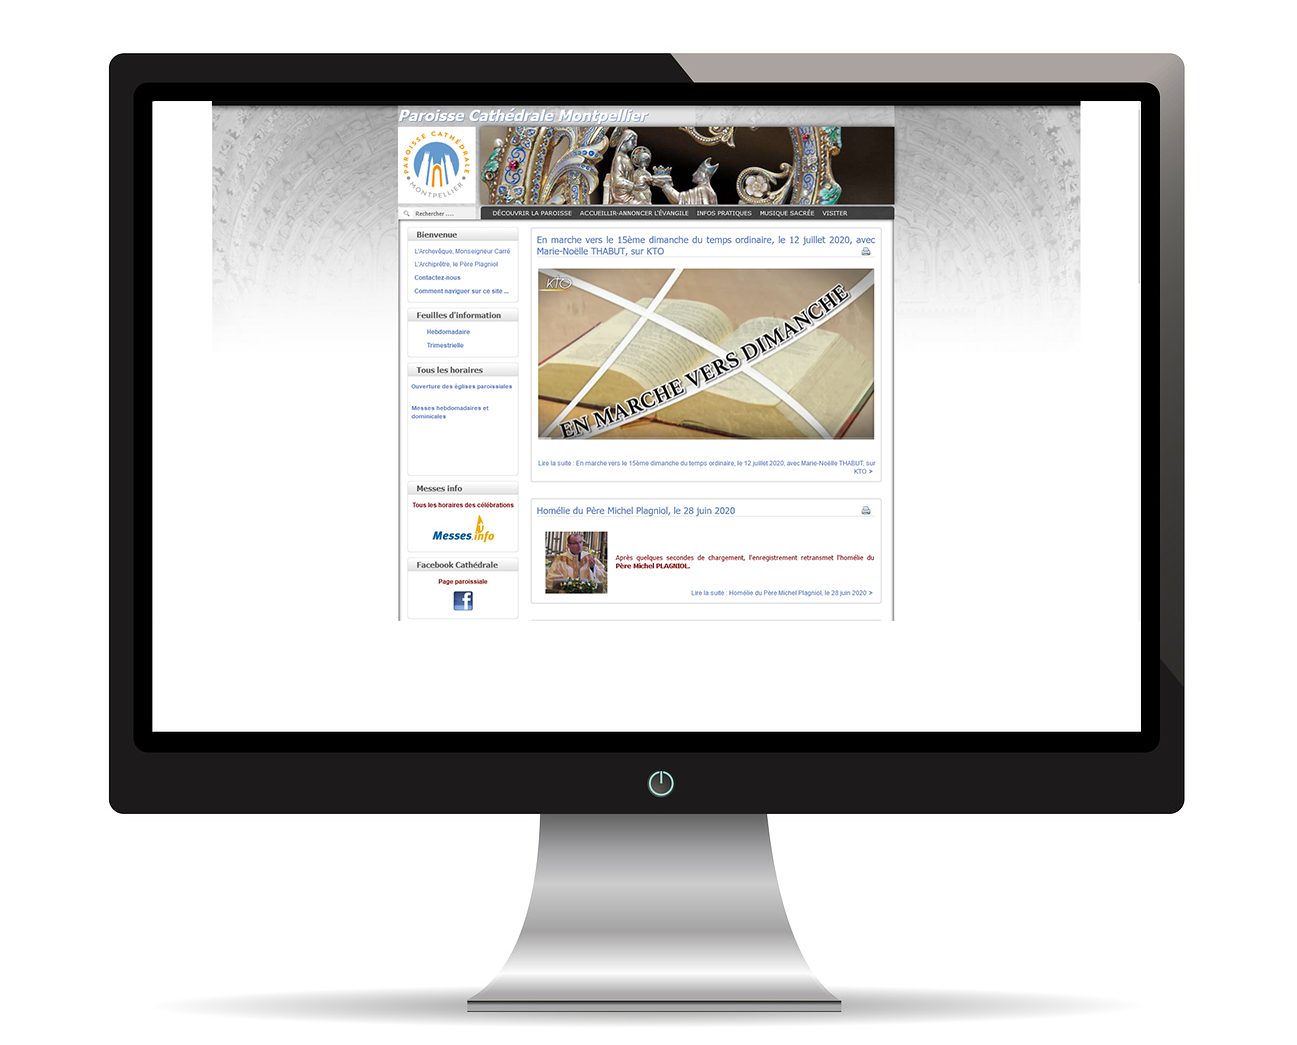   Image illustrant le développement du site vitrine de la Cathédrale de Montpellier avec Joomla!, un système de gestion de contenu (CMS) renommé.